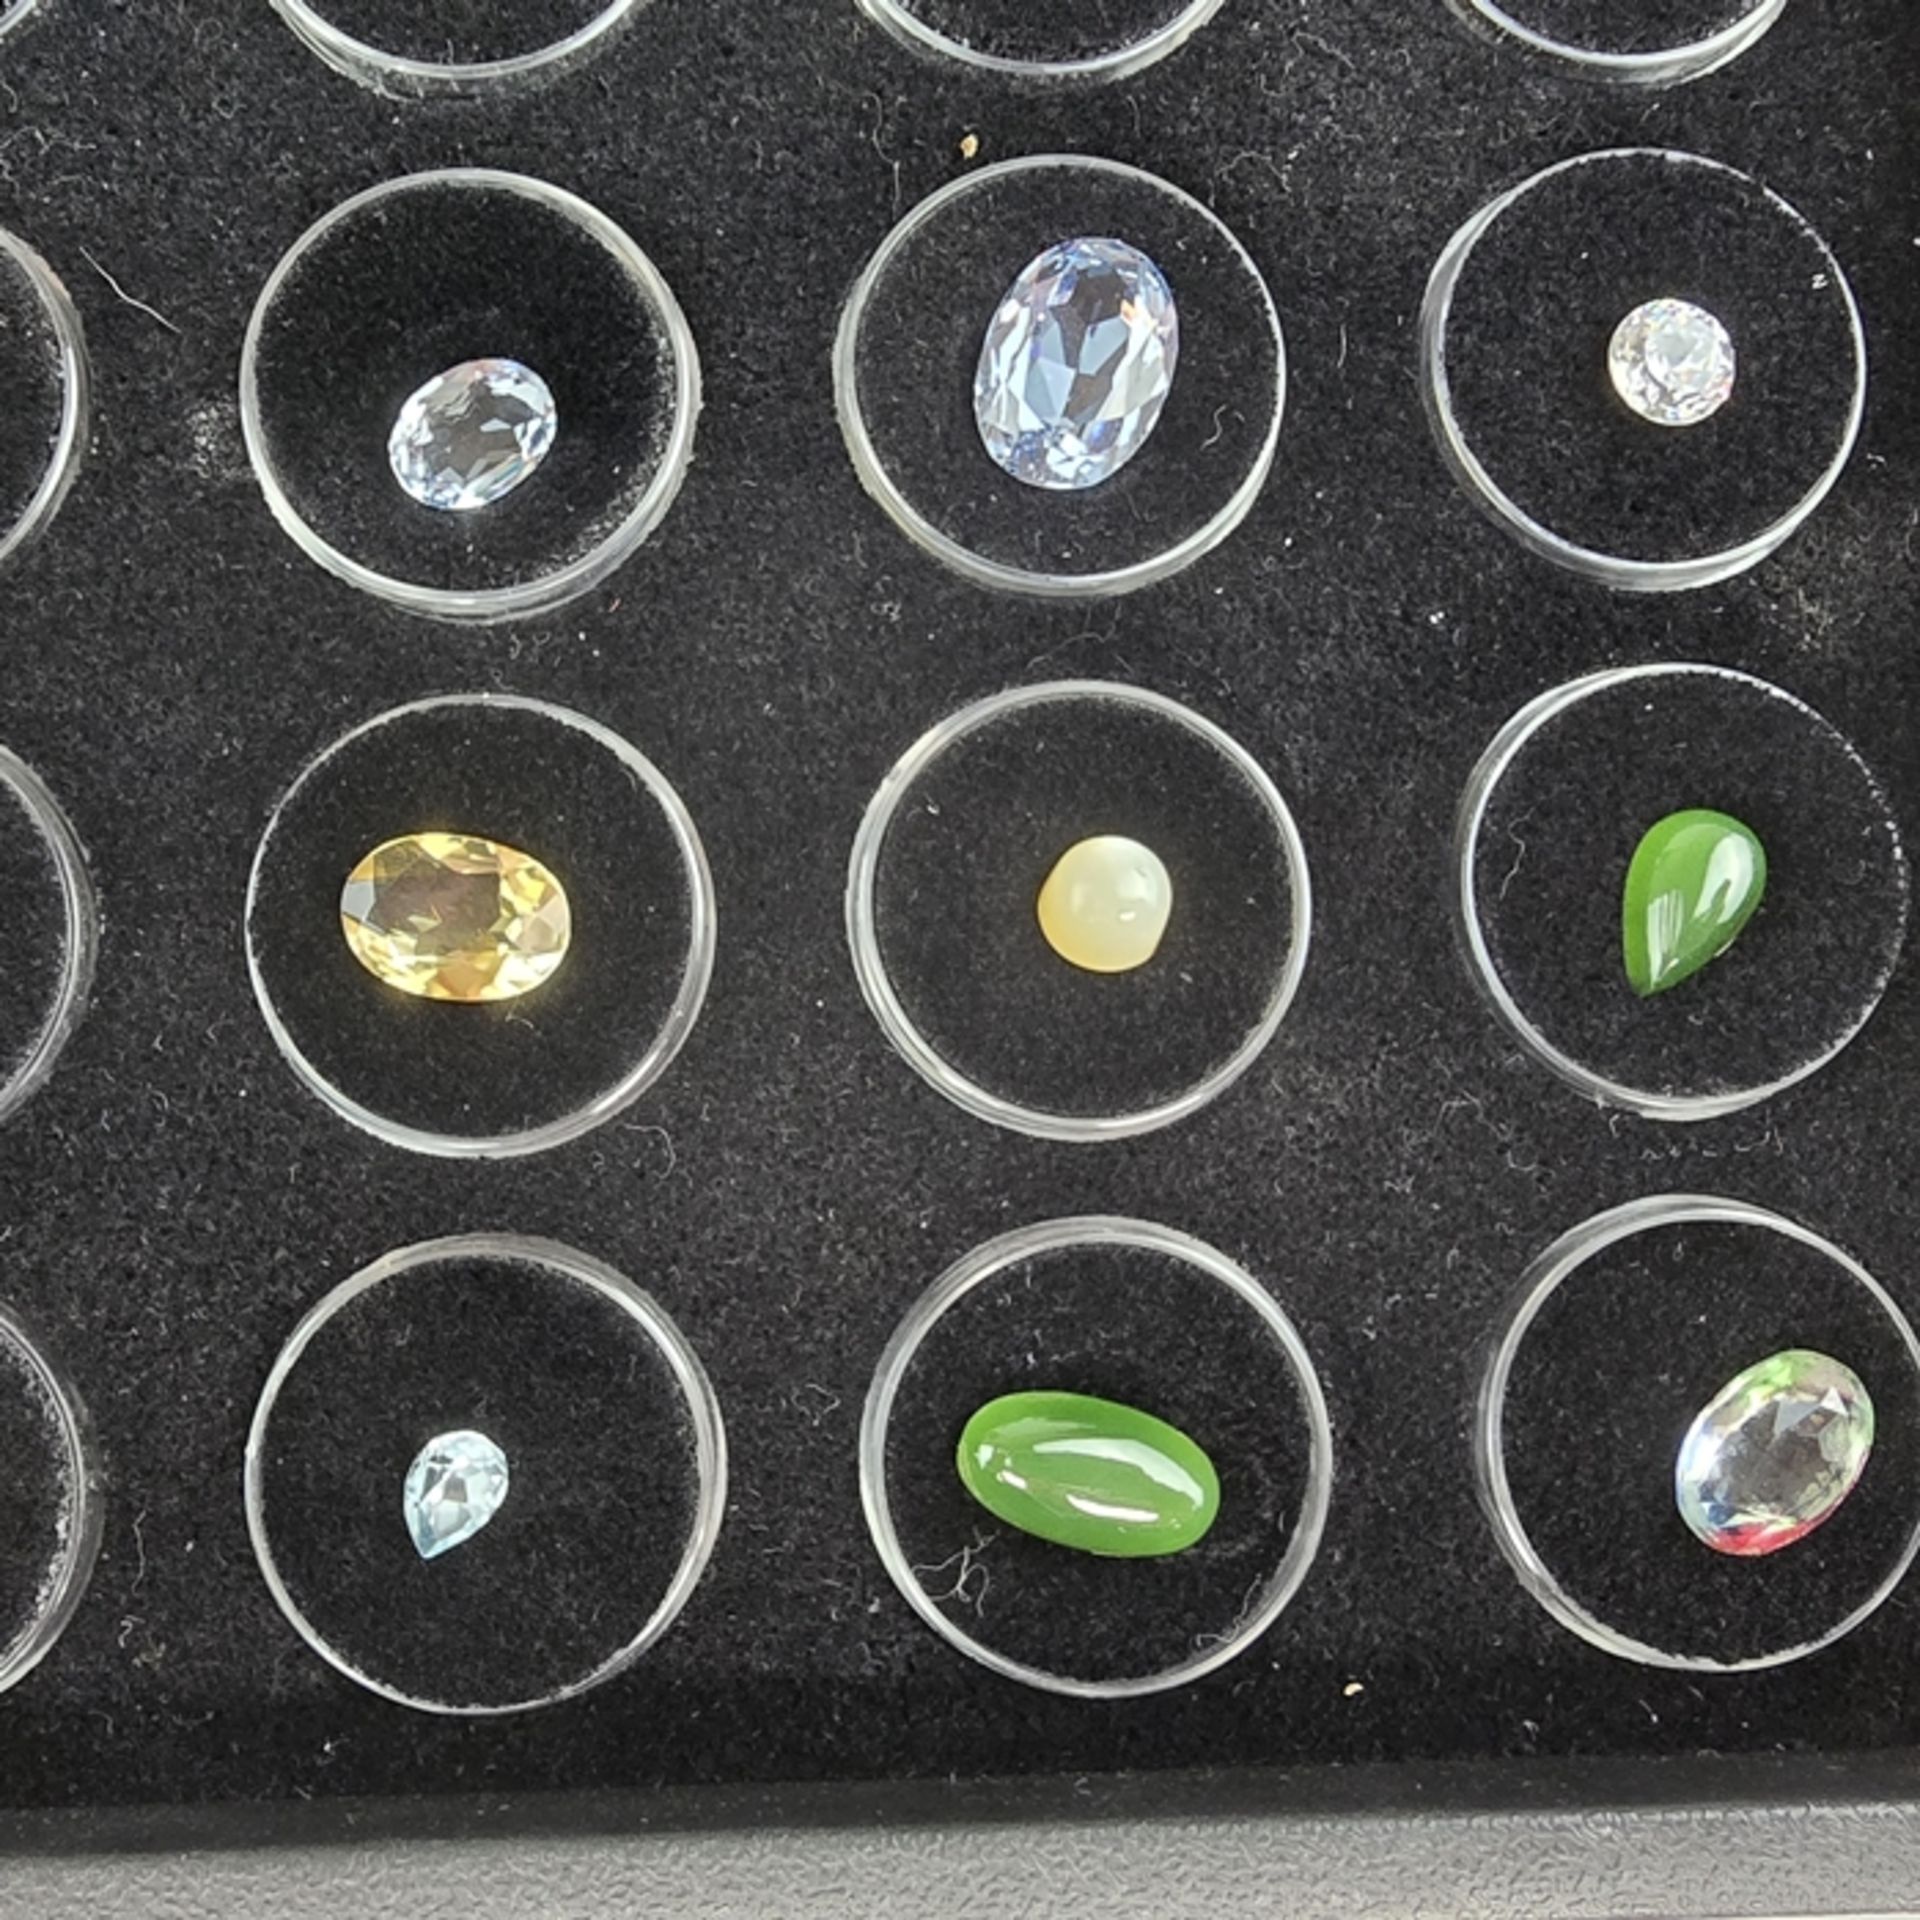 Sammlung (Halb-)Edelsteine - 25 Kapseln mit diversen Steinen, unter anderem Mondstein, Citrin, grün - Bild 3 aus 9